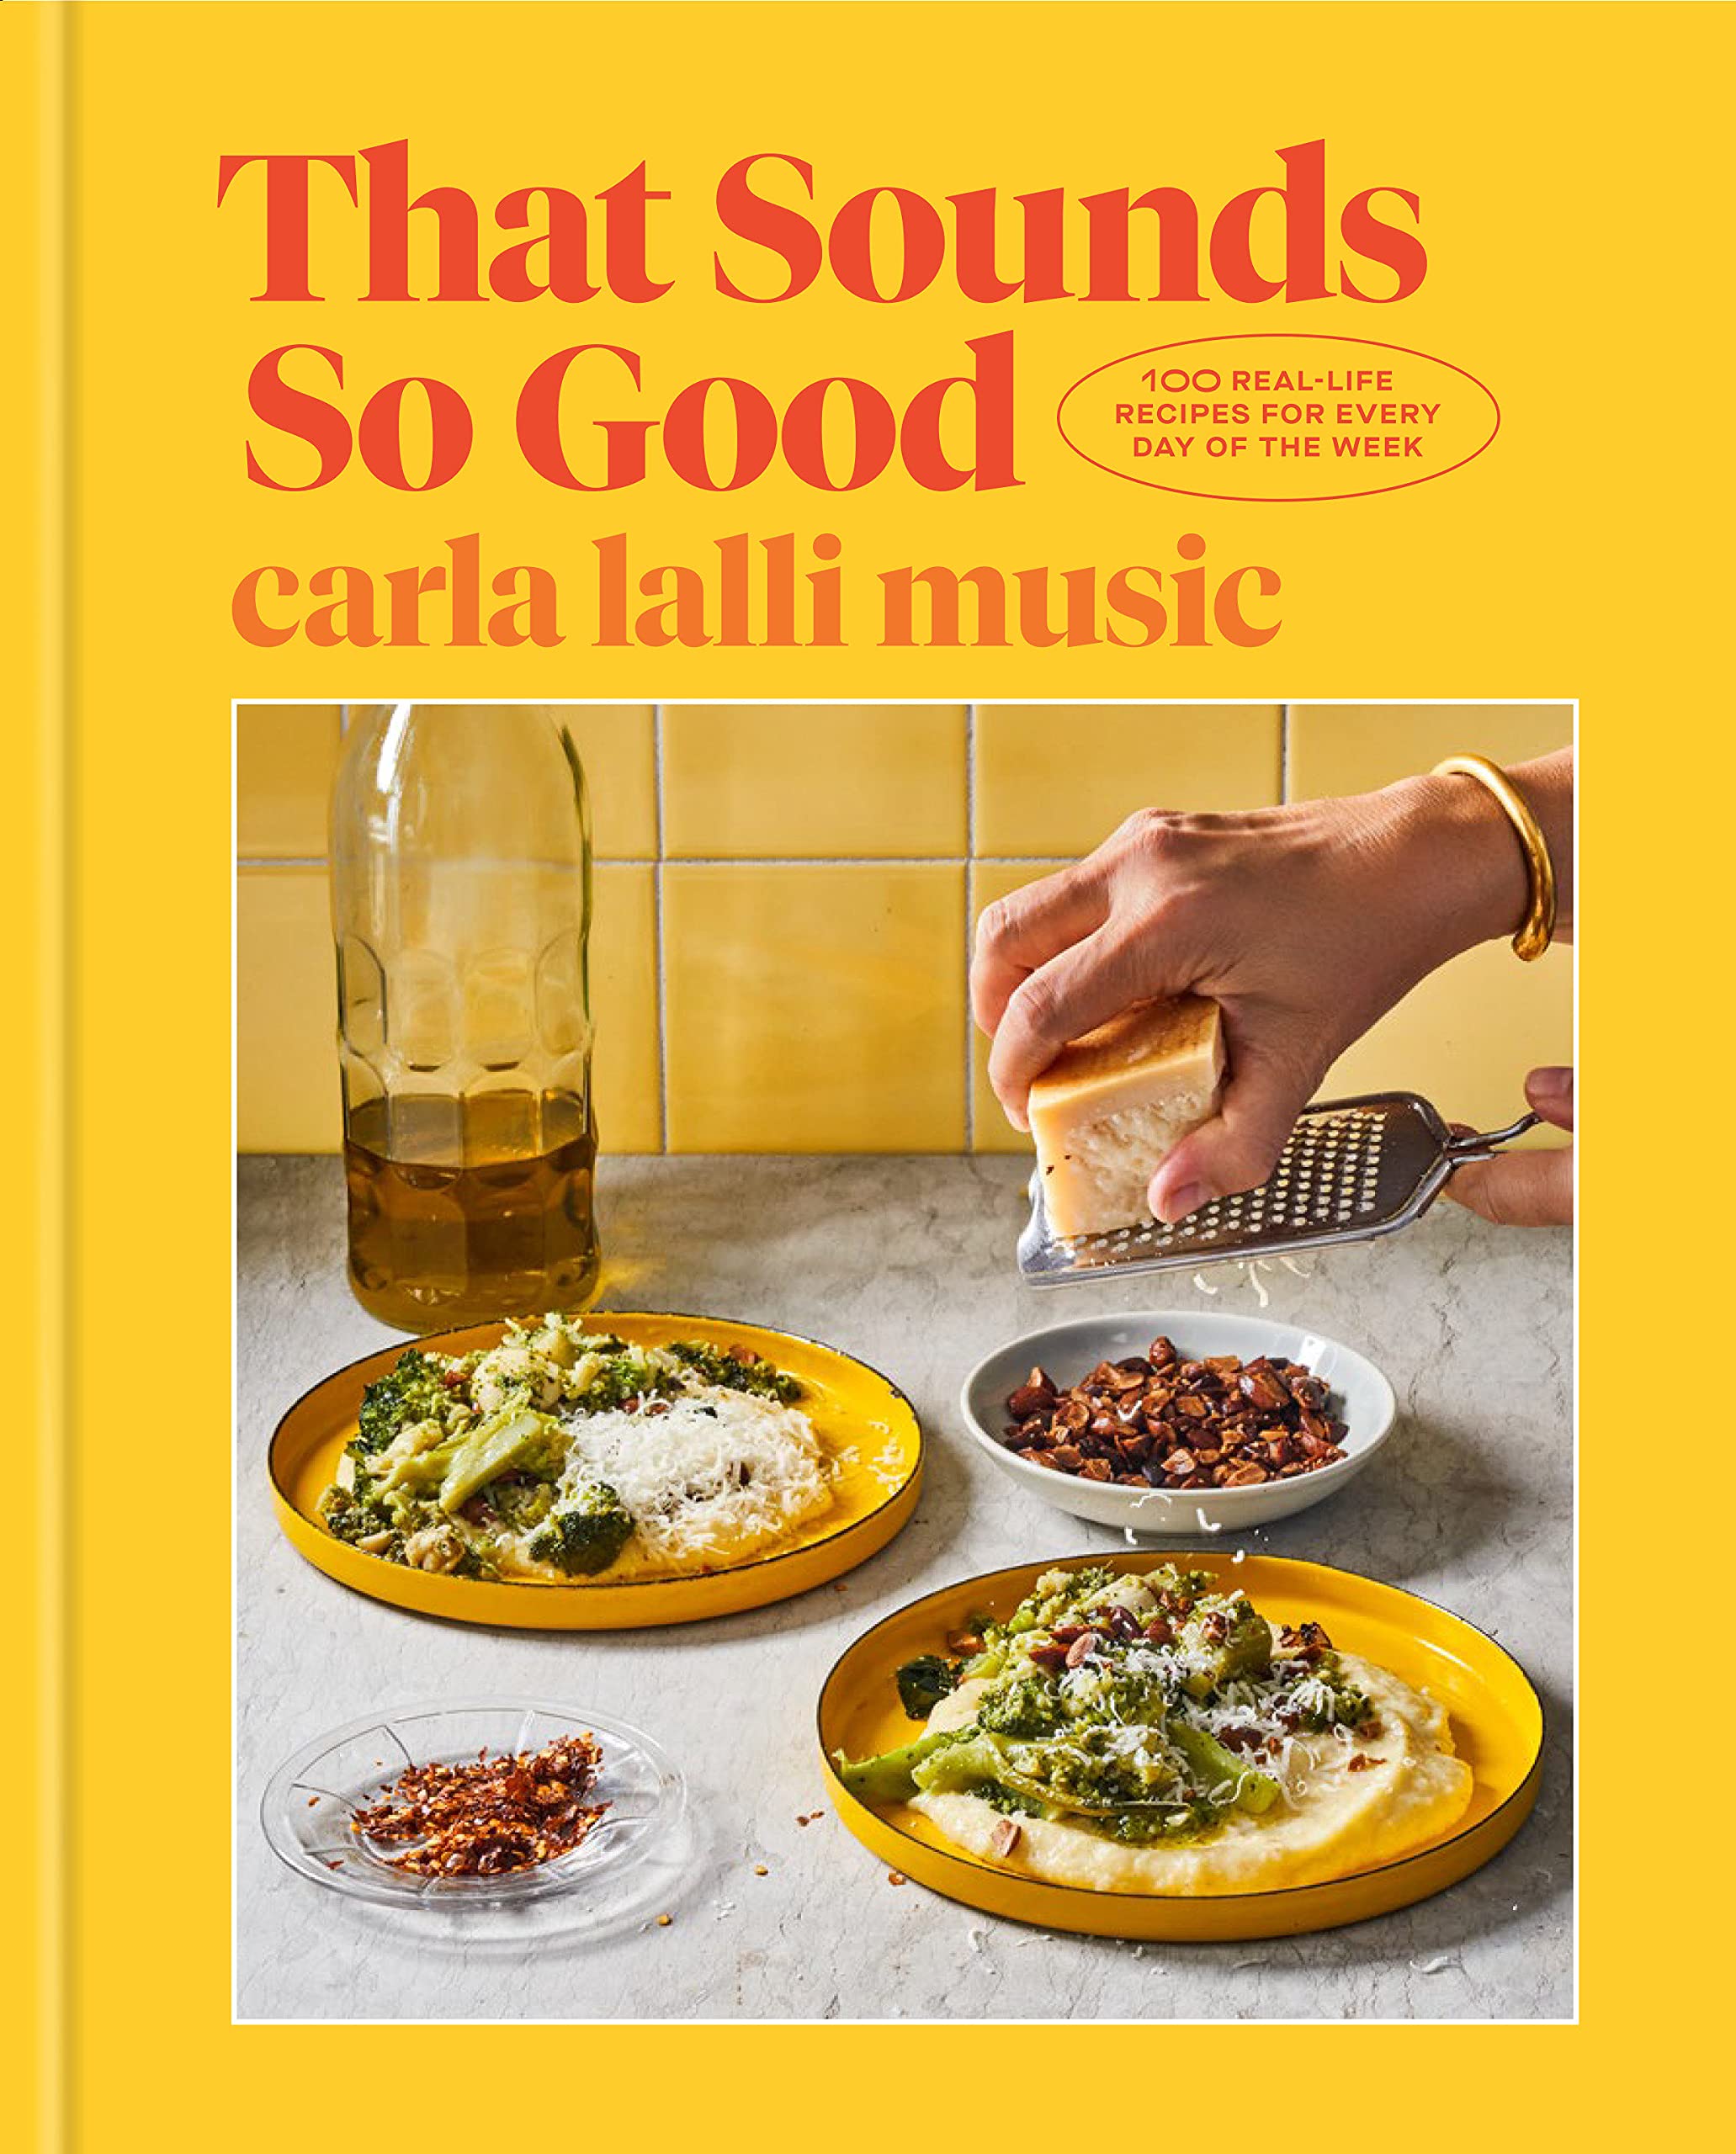 couverture du livre de cuisine That Sounds So Good de Carla Lalli Music